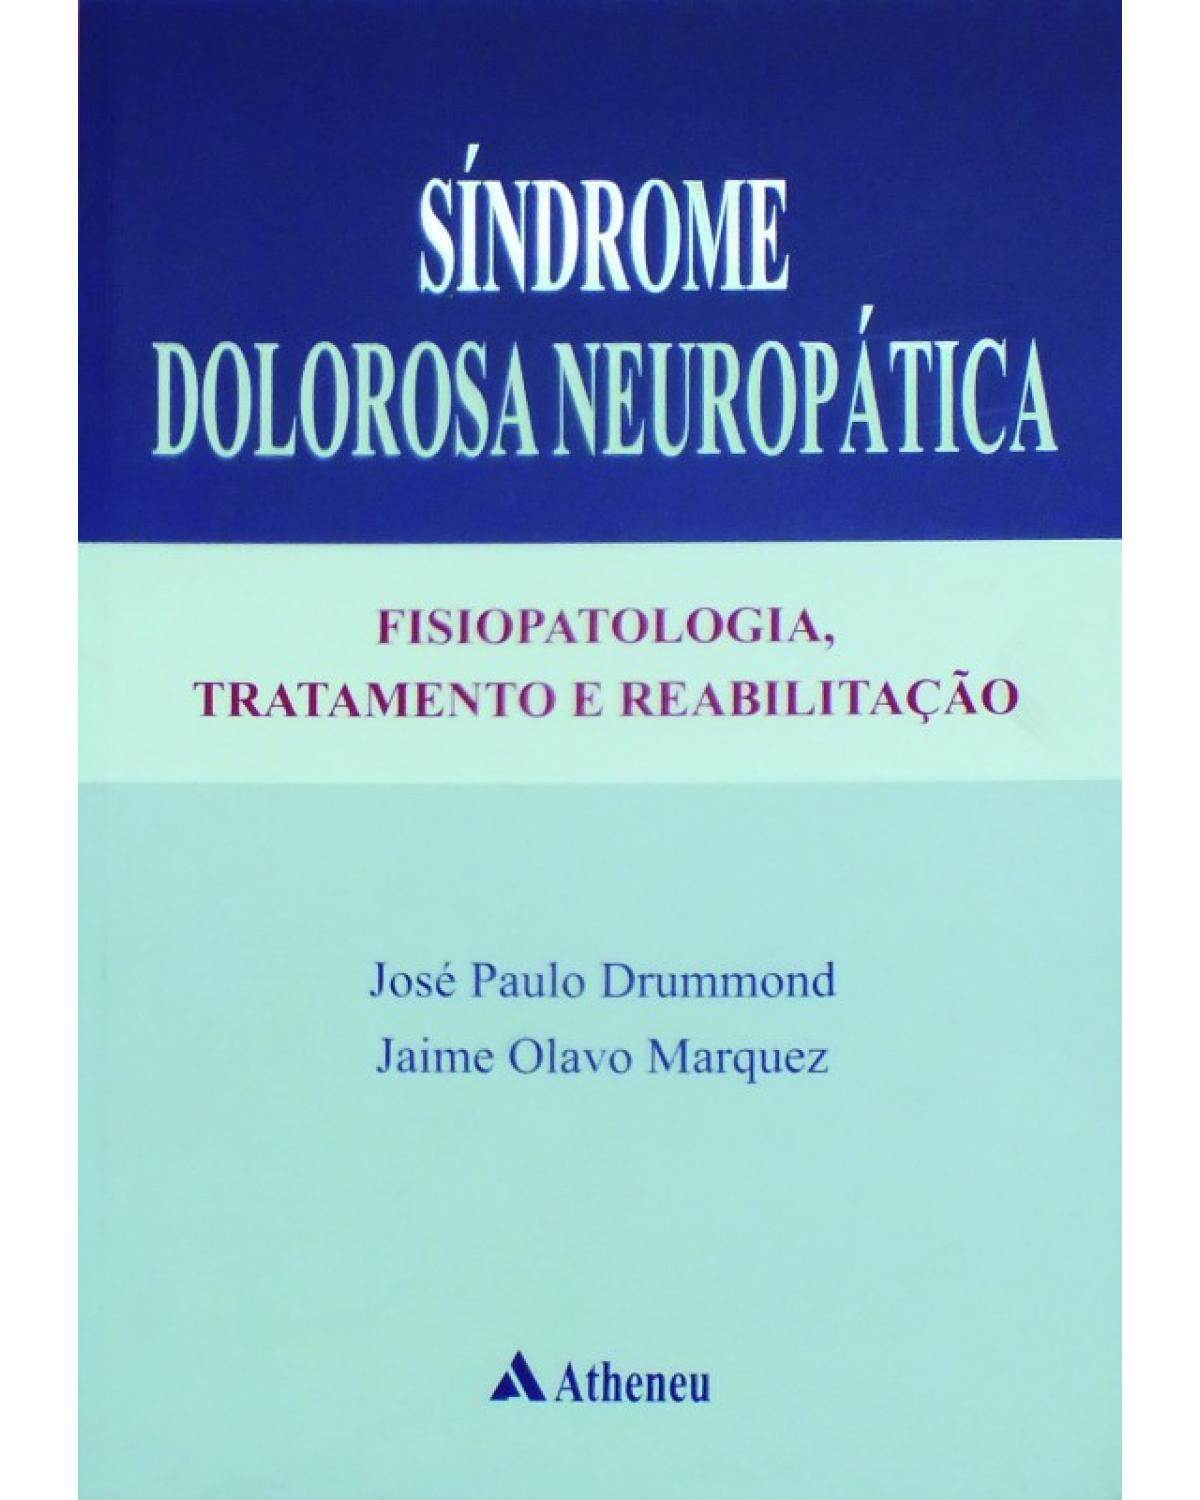 Síndrome dolorosa neuropática - fisiopatologia, tratamento e reabilitação - 1ª Edição | 2012